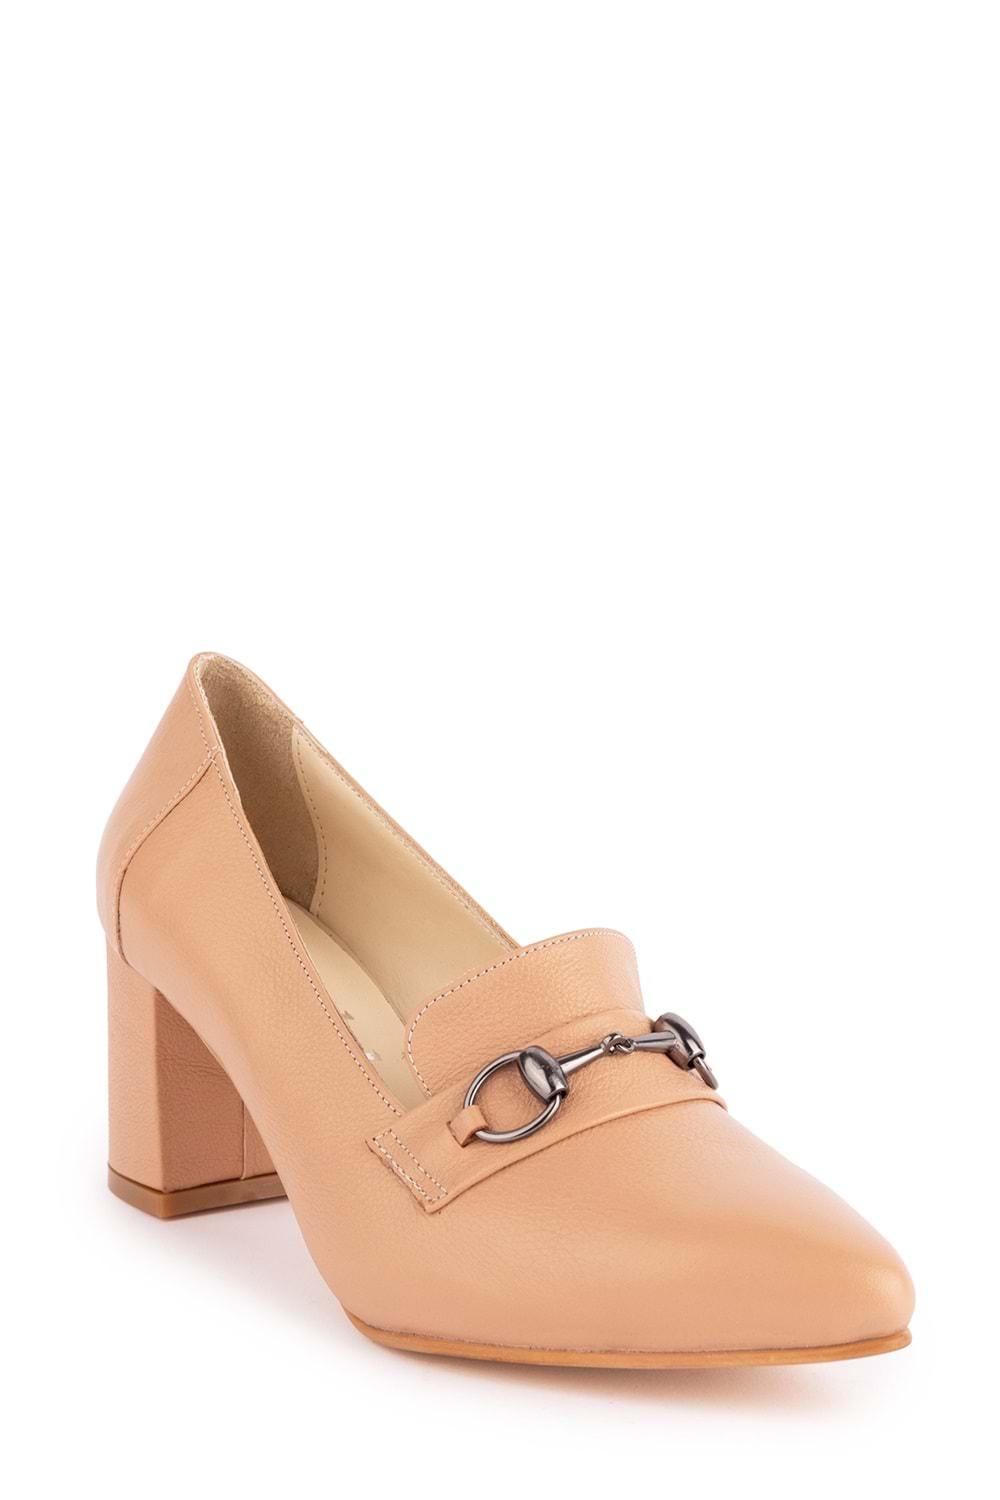 Gondol Kadın Hakiki Deri Klasik Topuklu Toka Detaylı Ayakkabı şhn.956 - Somon - 34